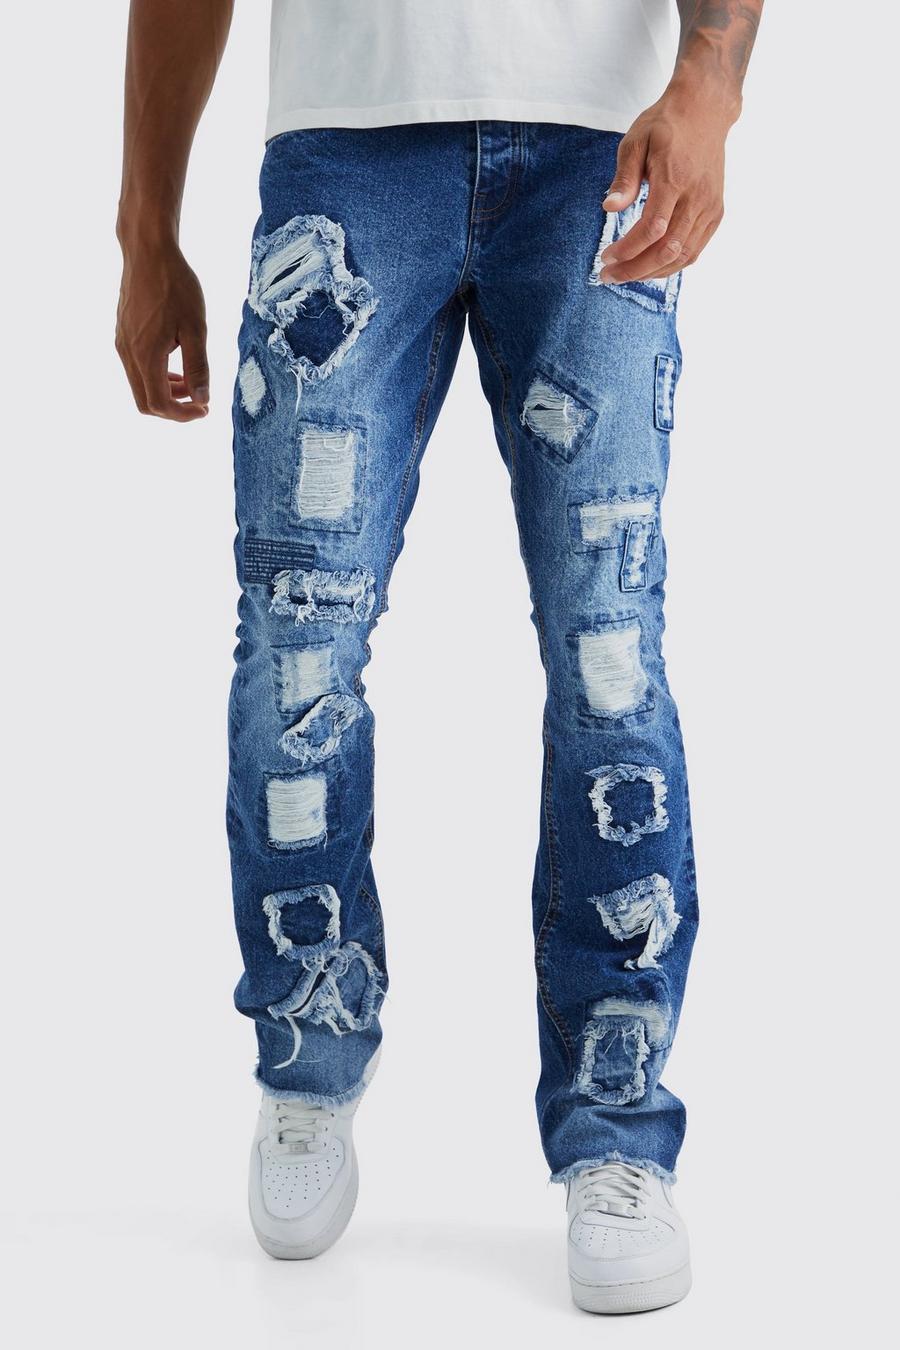 Jeans Tall Slim Fit in denim rigido effetto patchwork effetto smagliato, Dark blue